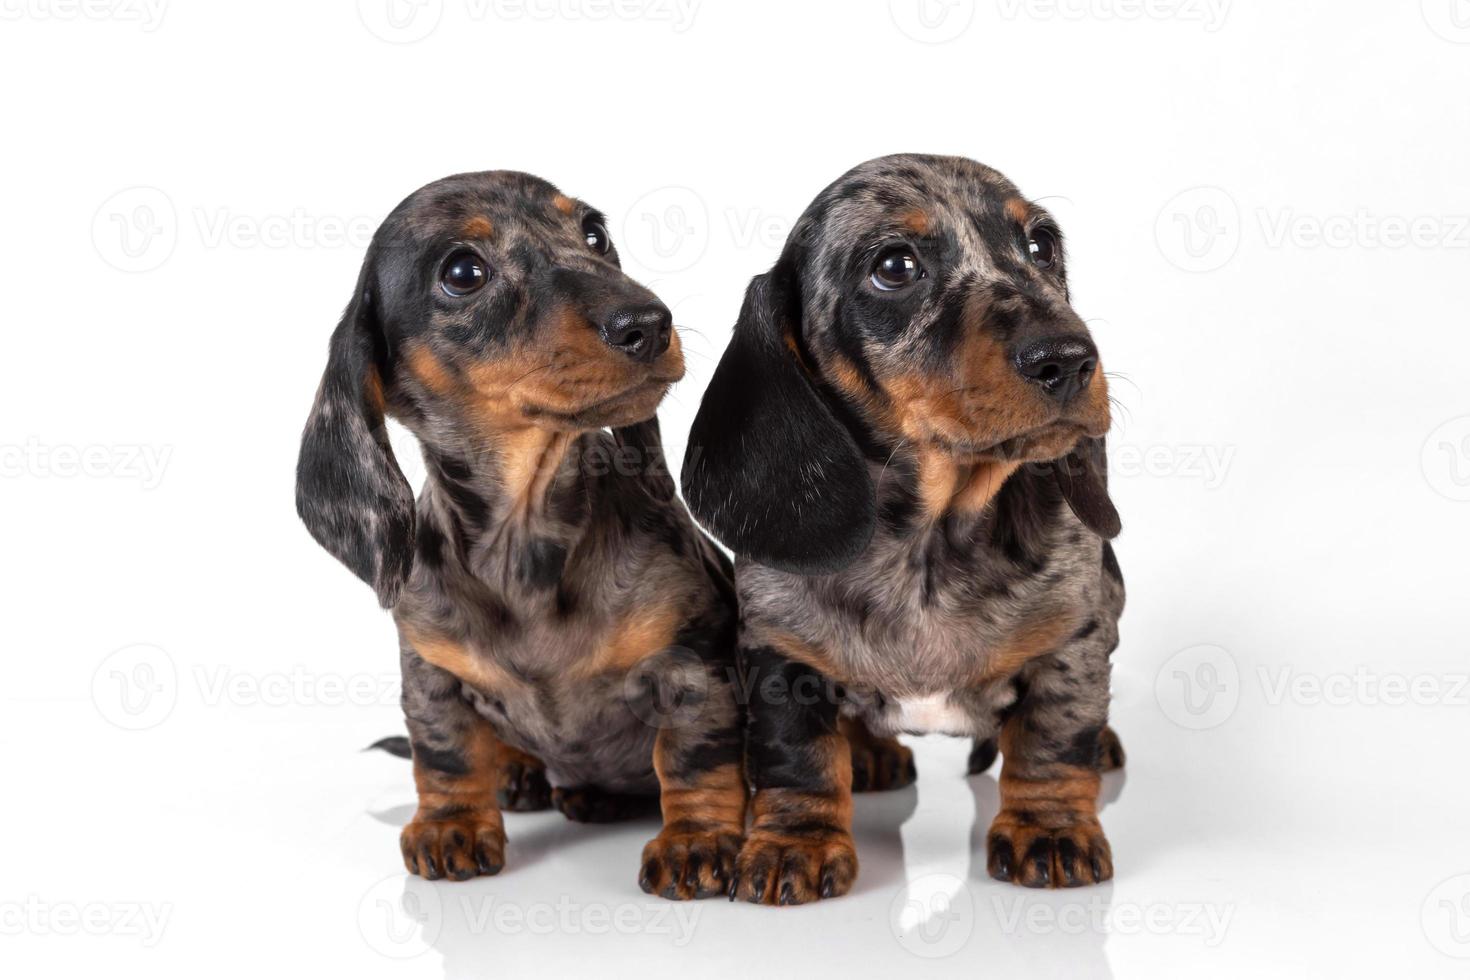 um par de cachorrinhos de dachshund de pelo liso de mármore se cansaram da sessão de fotos e adormeceram um em cima do outro